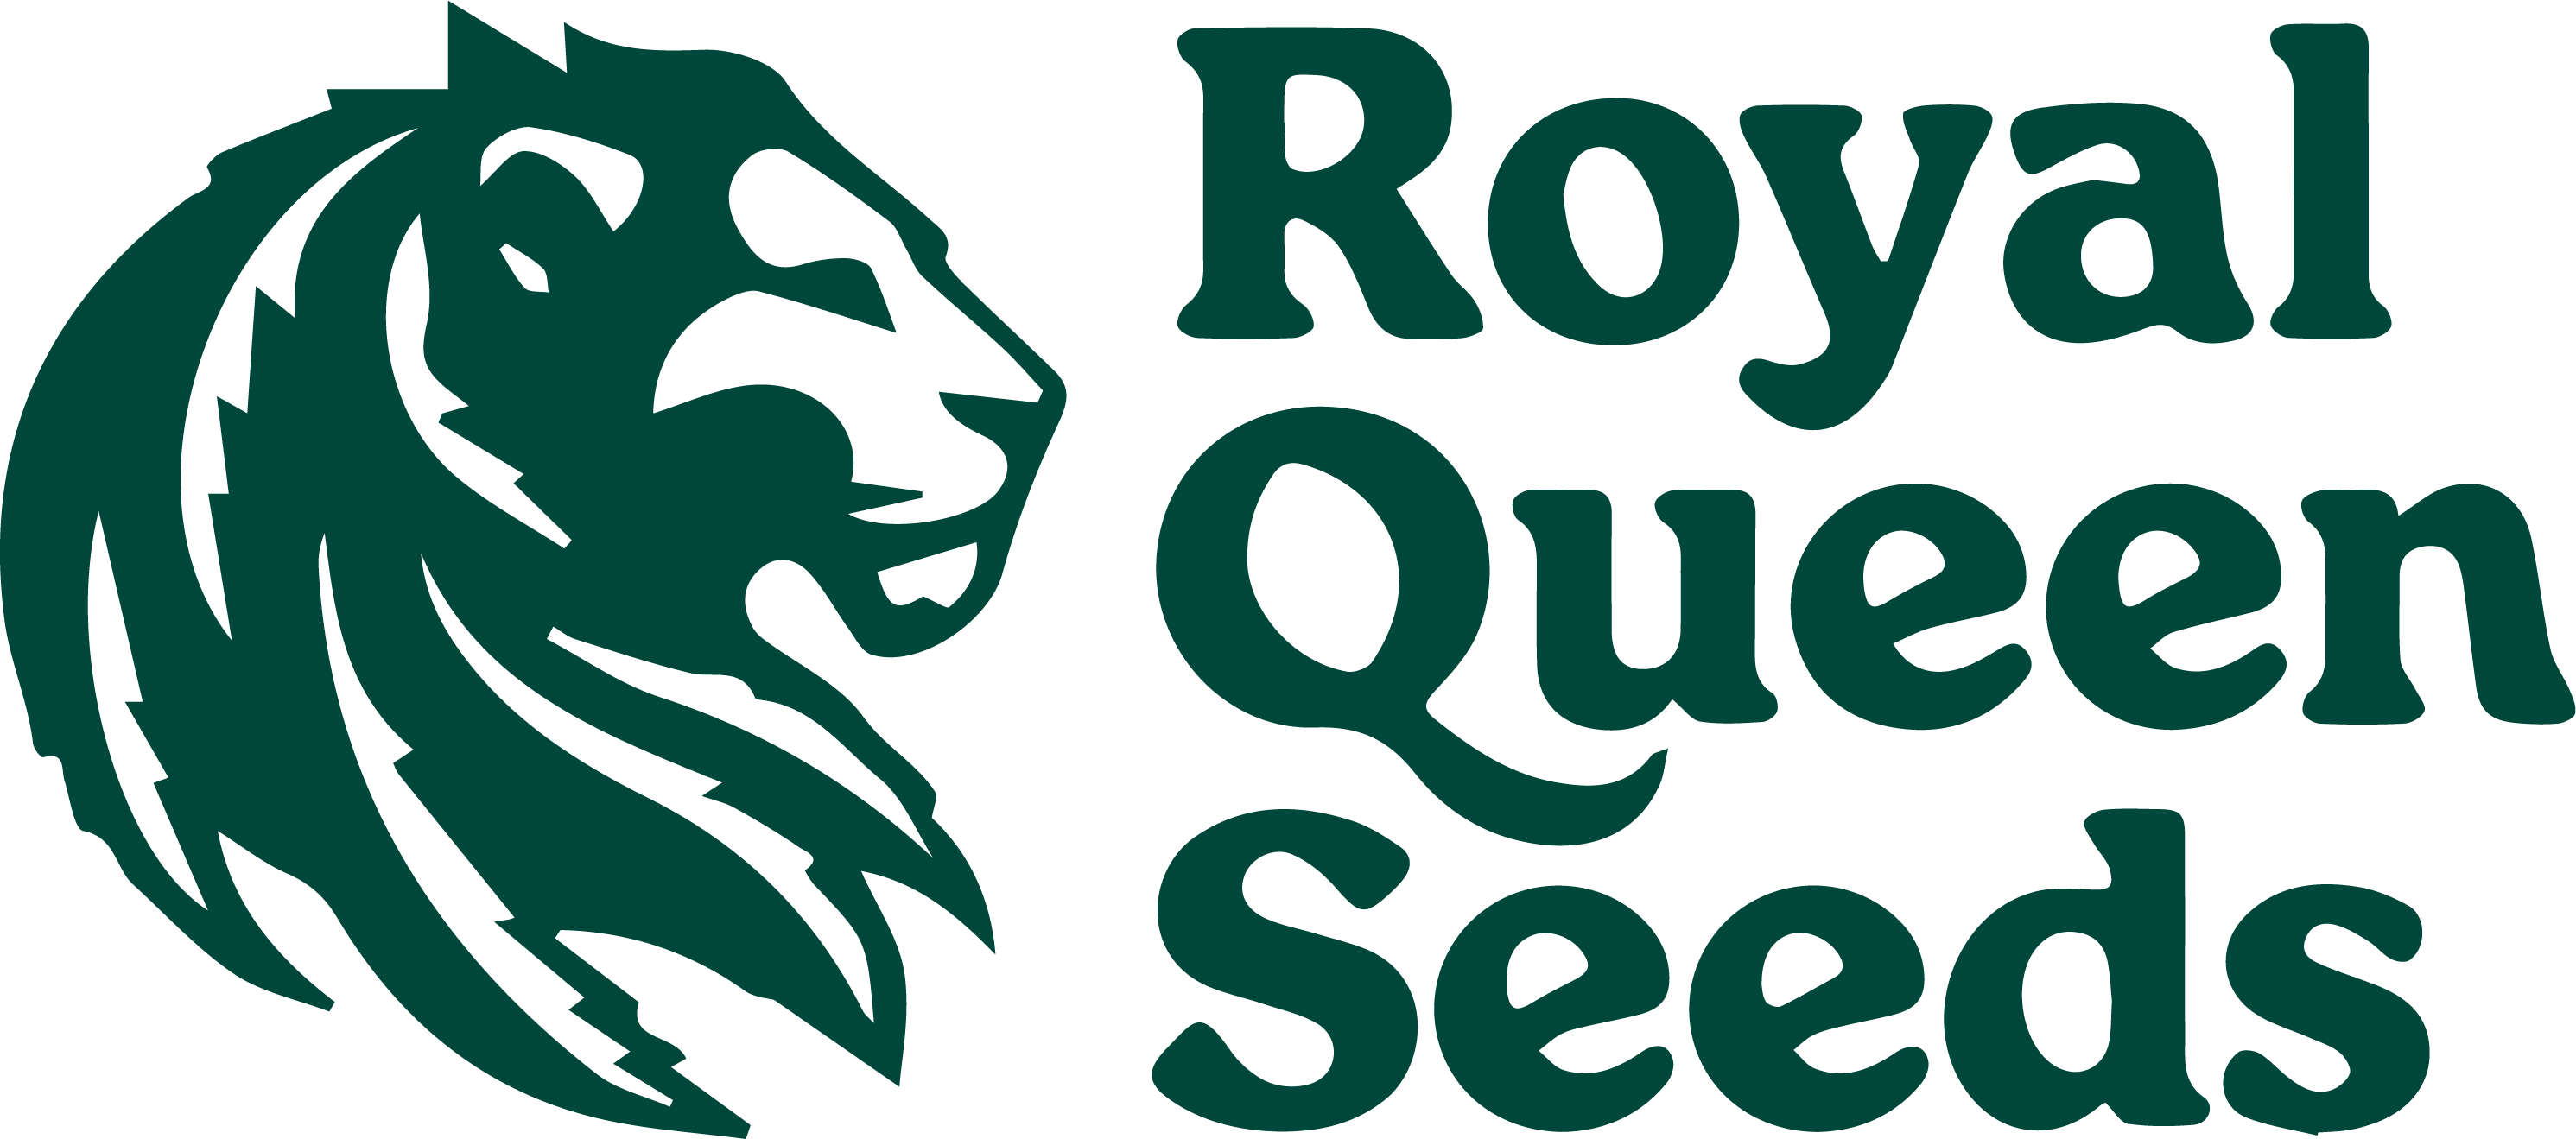 Royal Queen Seeds - Tyson 2.0 - Autoflower semena konoplje